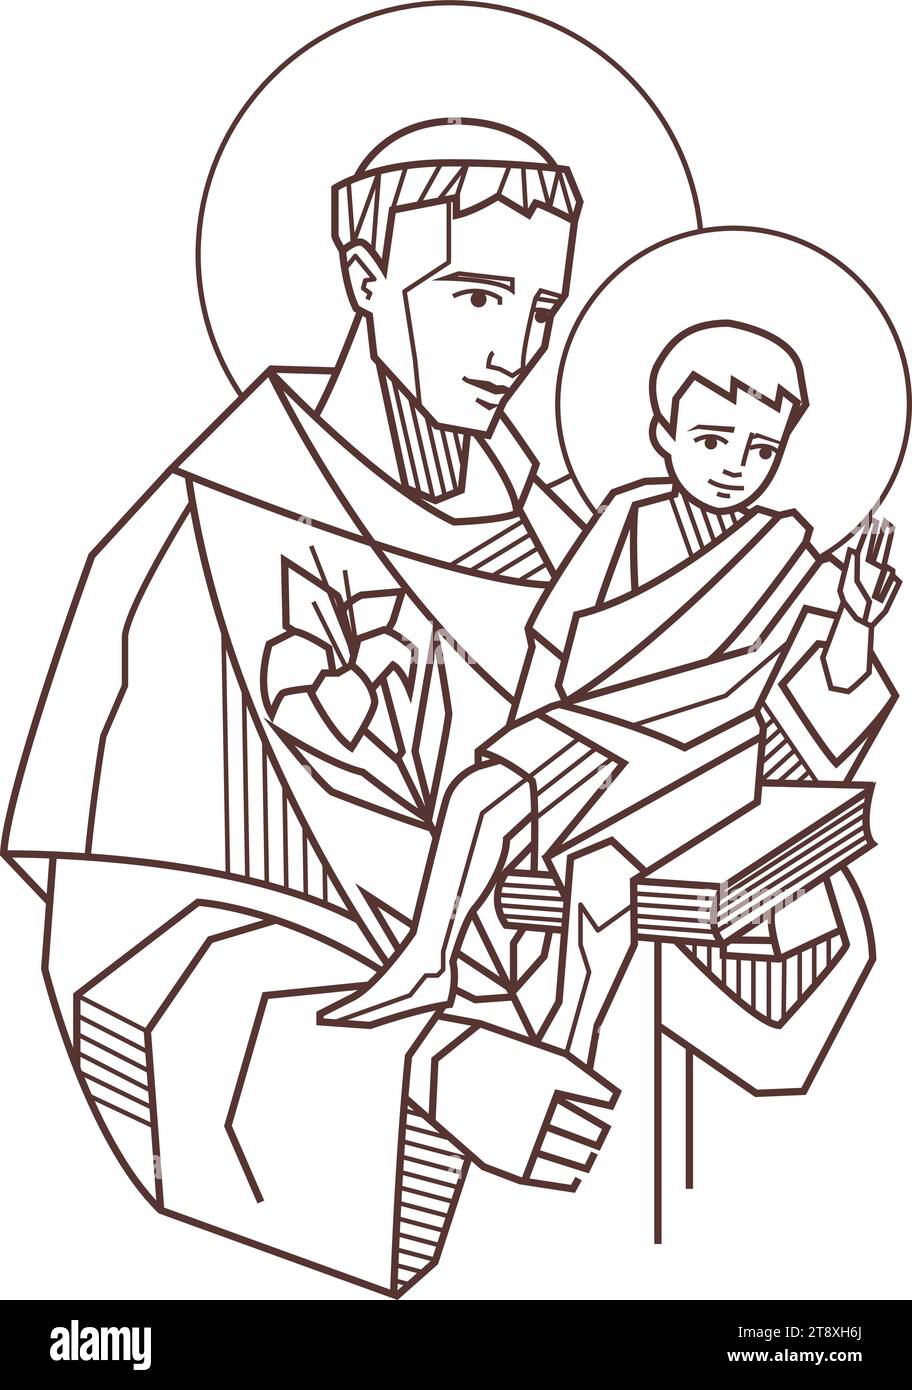 Illustrazione vettoriale disegnata a mano o disegno di Sant'Antonio da Padova e Gesù bambino Illustrazione Vettoriale